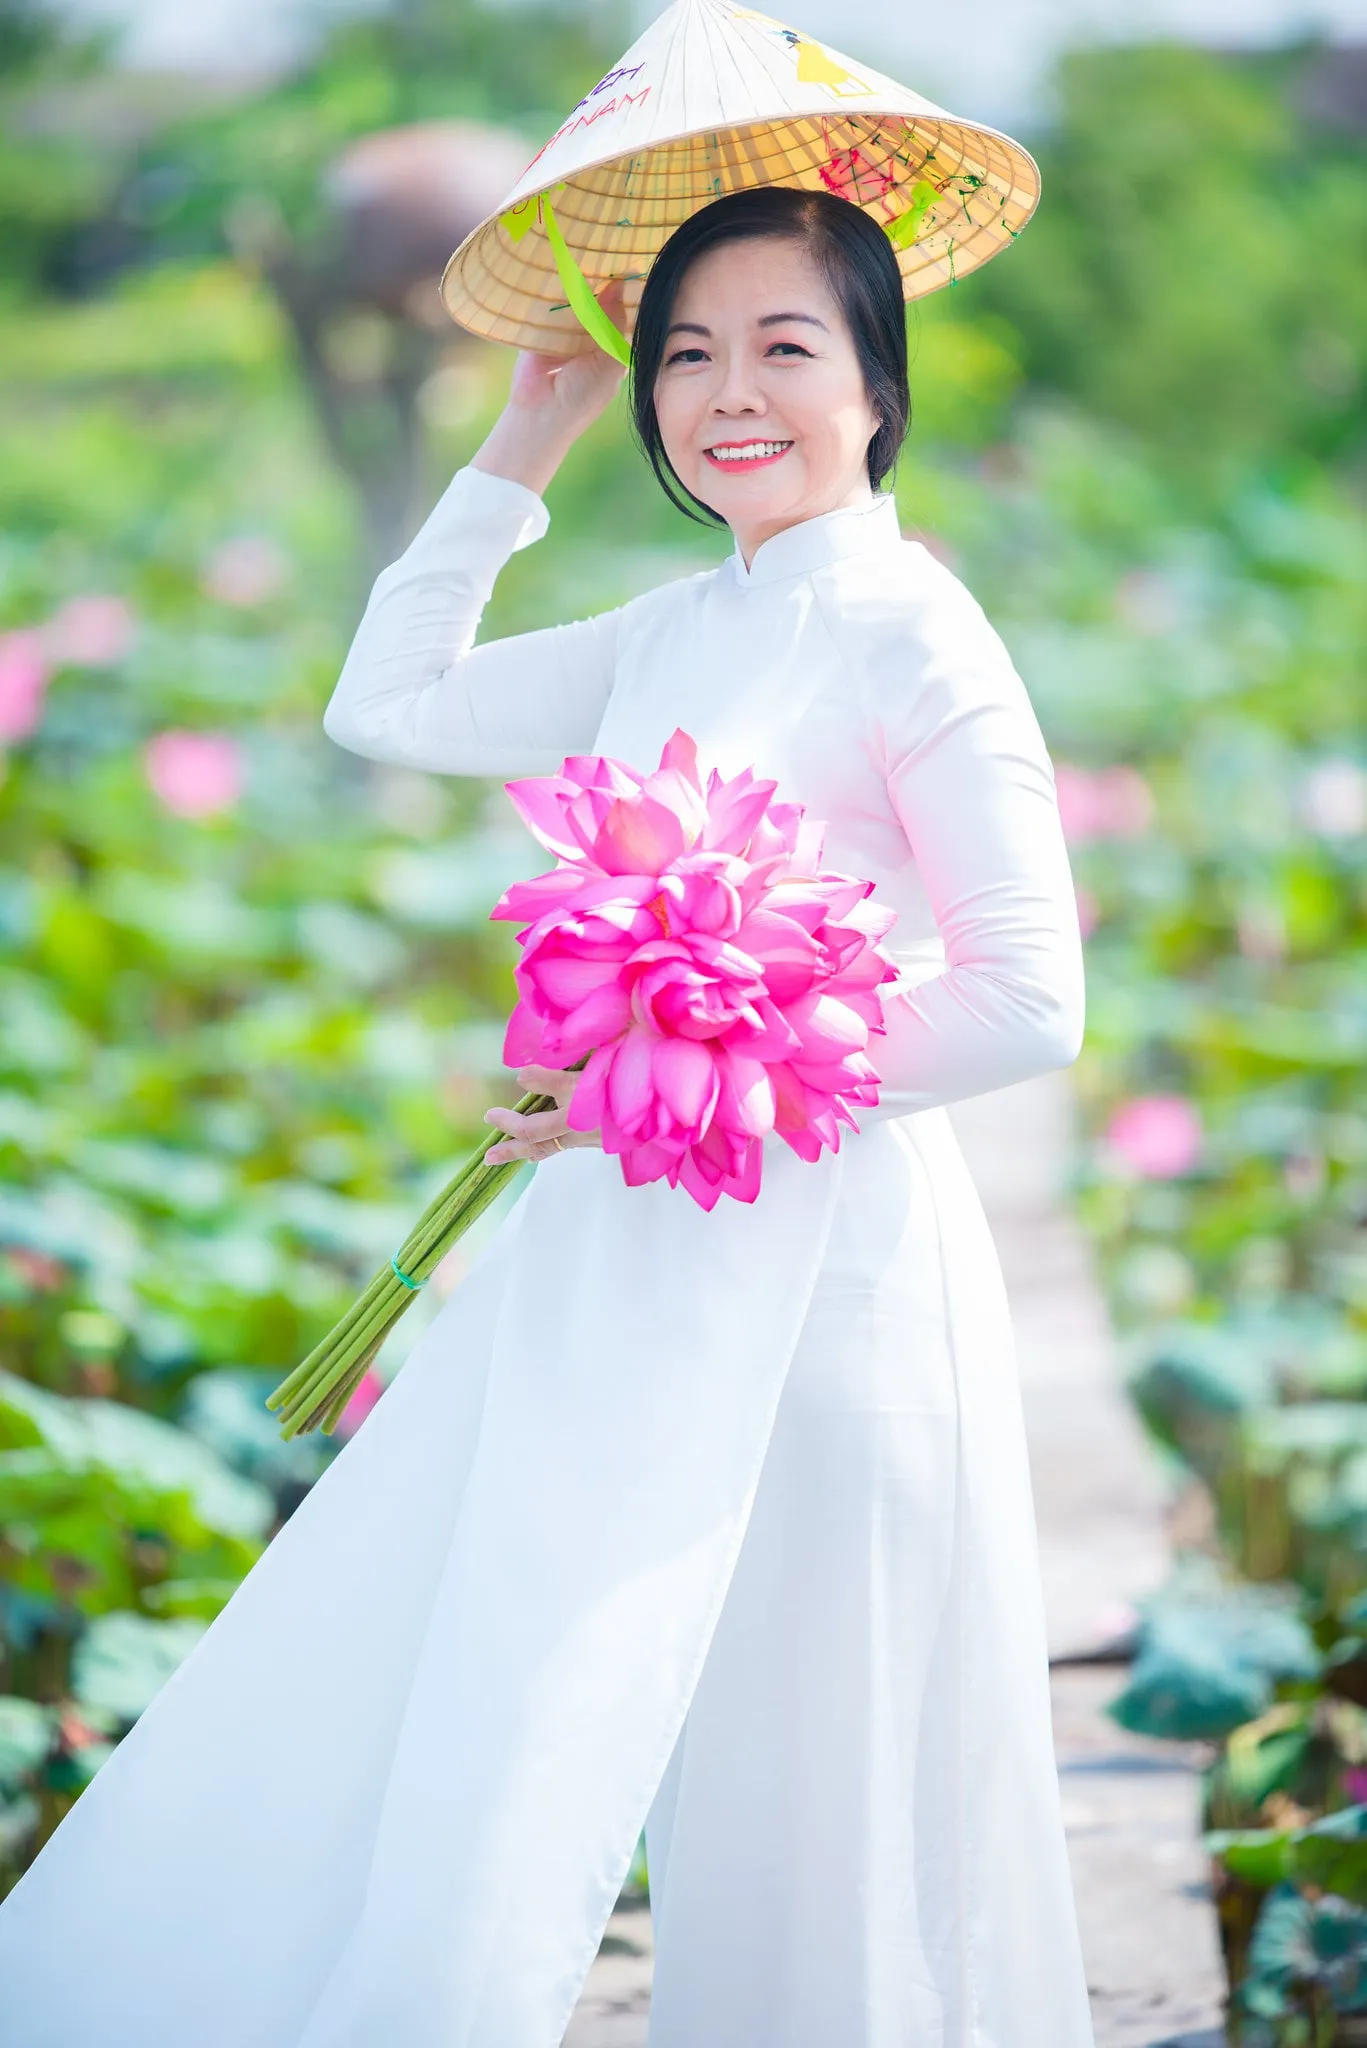 nh áo dài hoa sen 20 - 49 cách tạo dáng chụp ảnh với áo dài tuyệt đẹp - HThao Studio